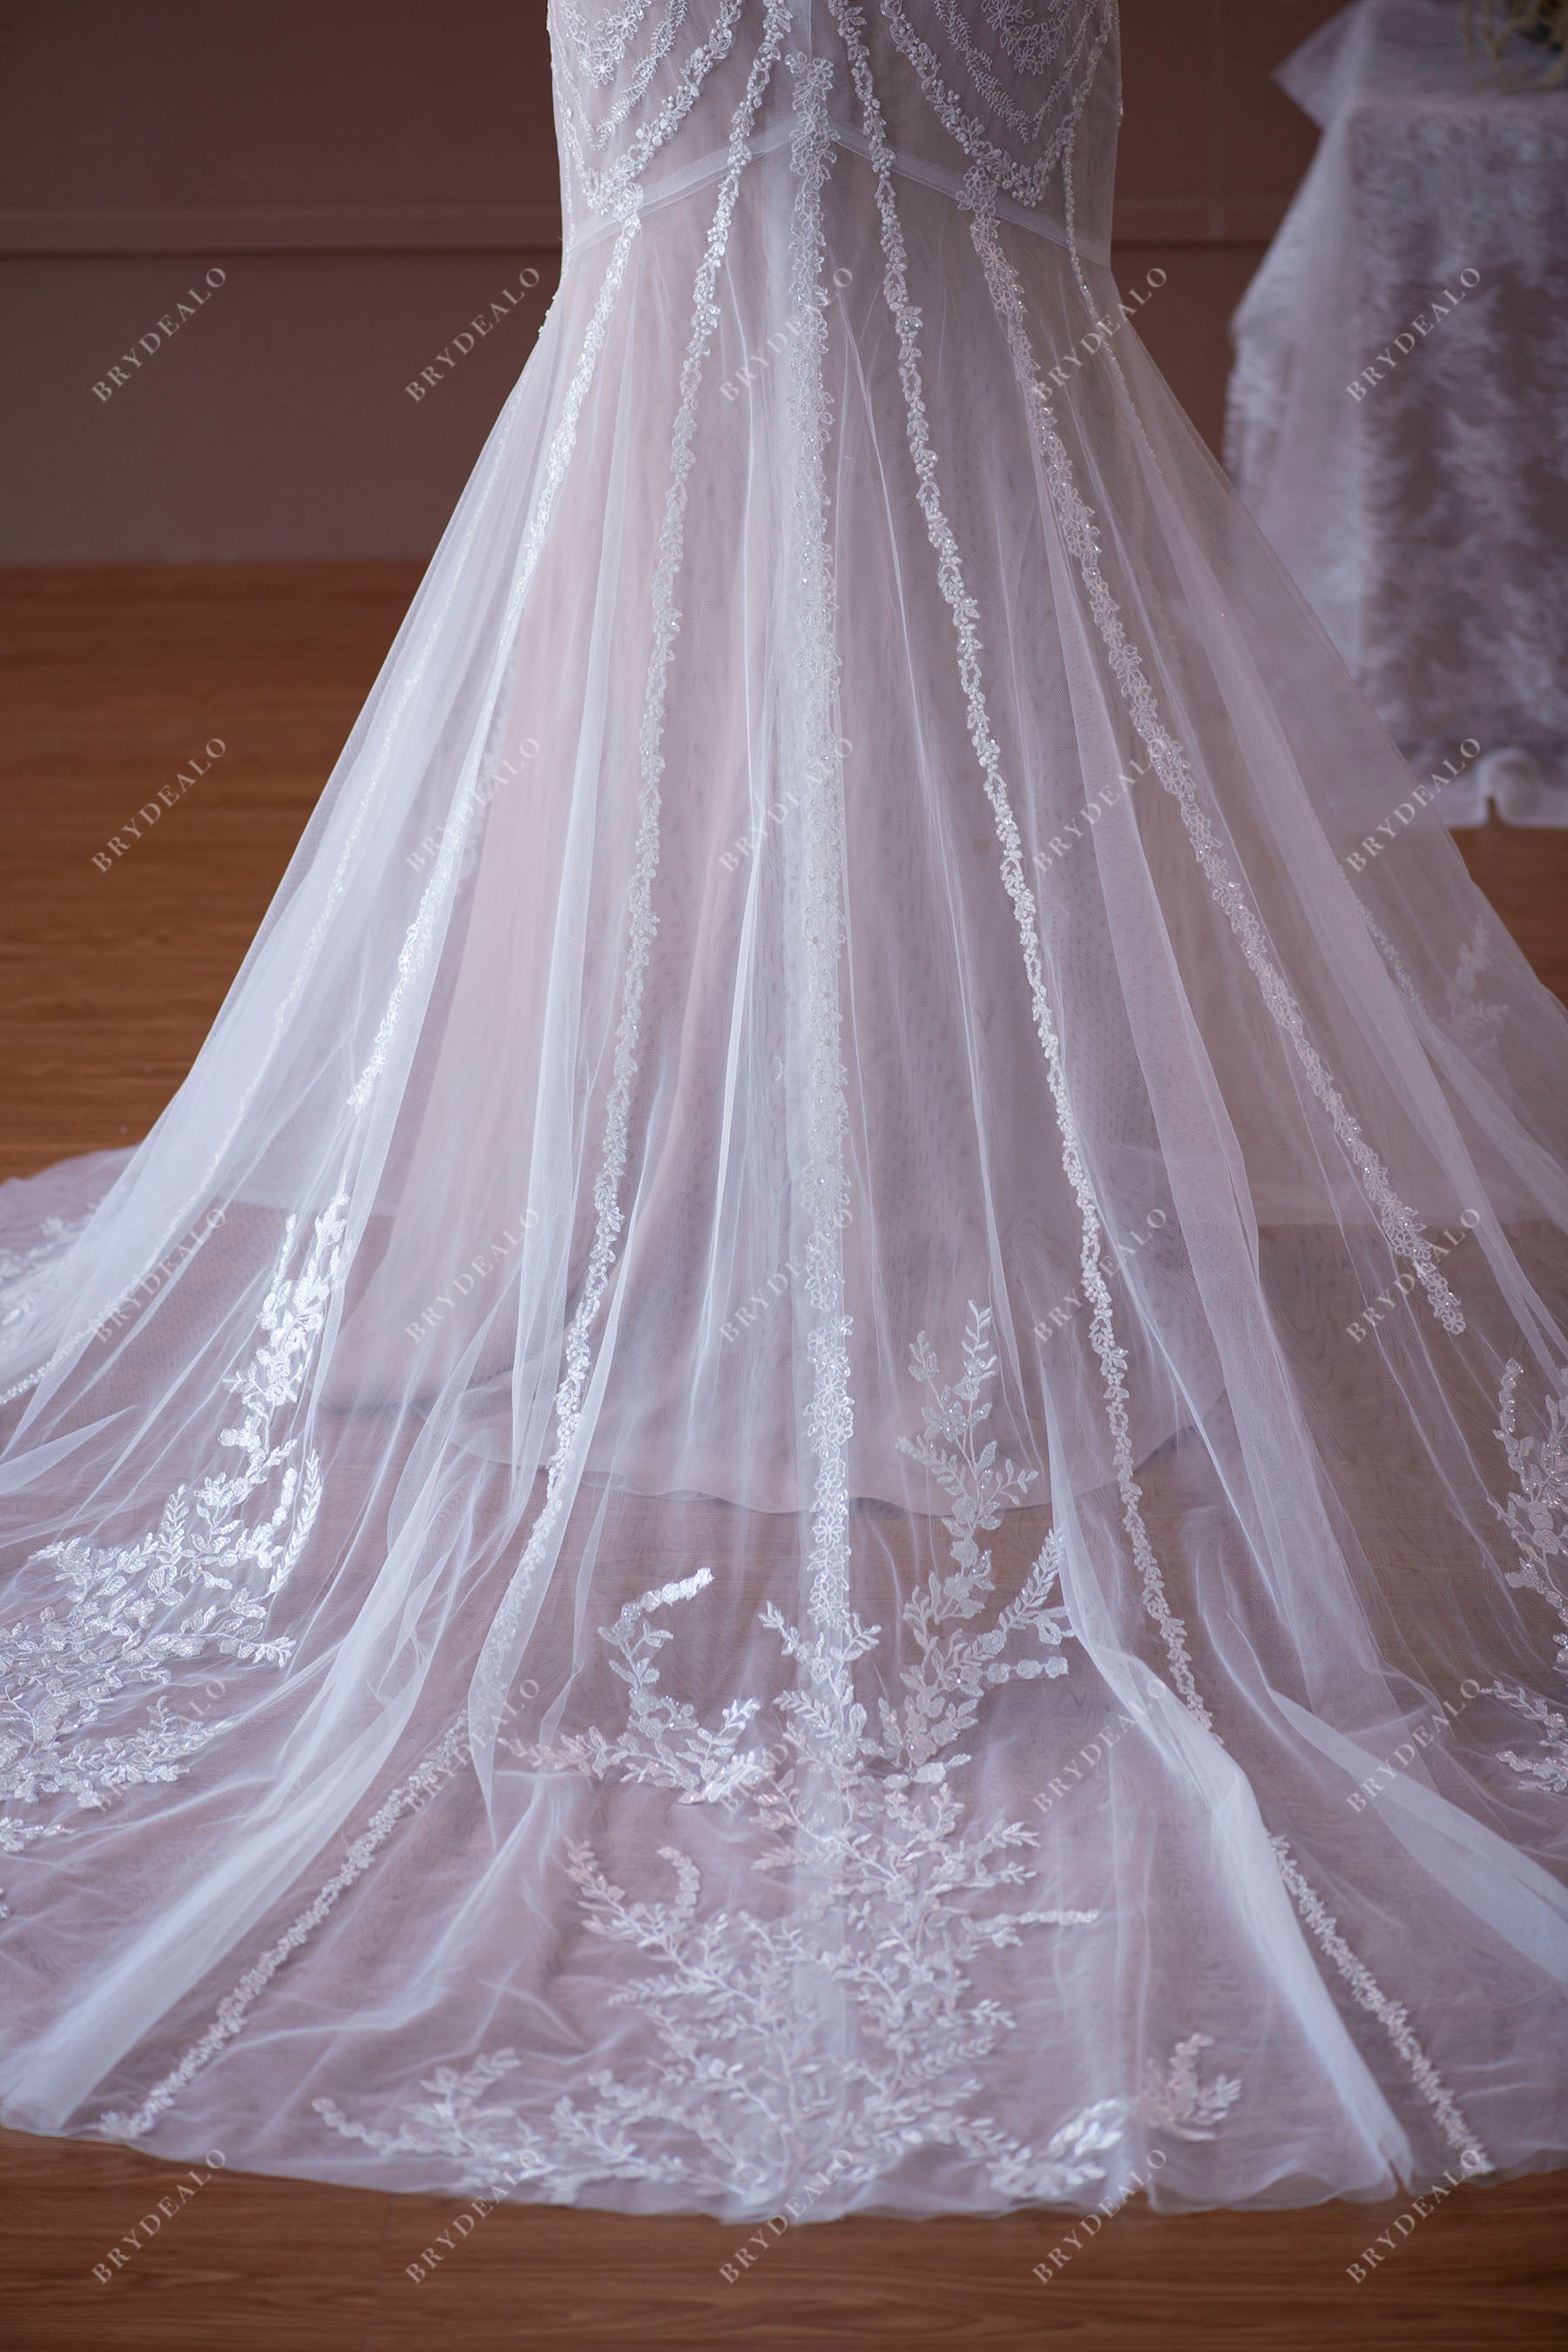 appliqued tulle godet wedding gown